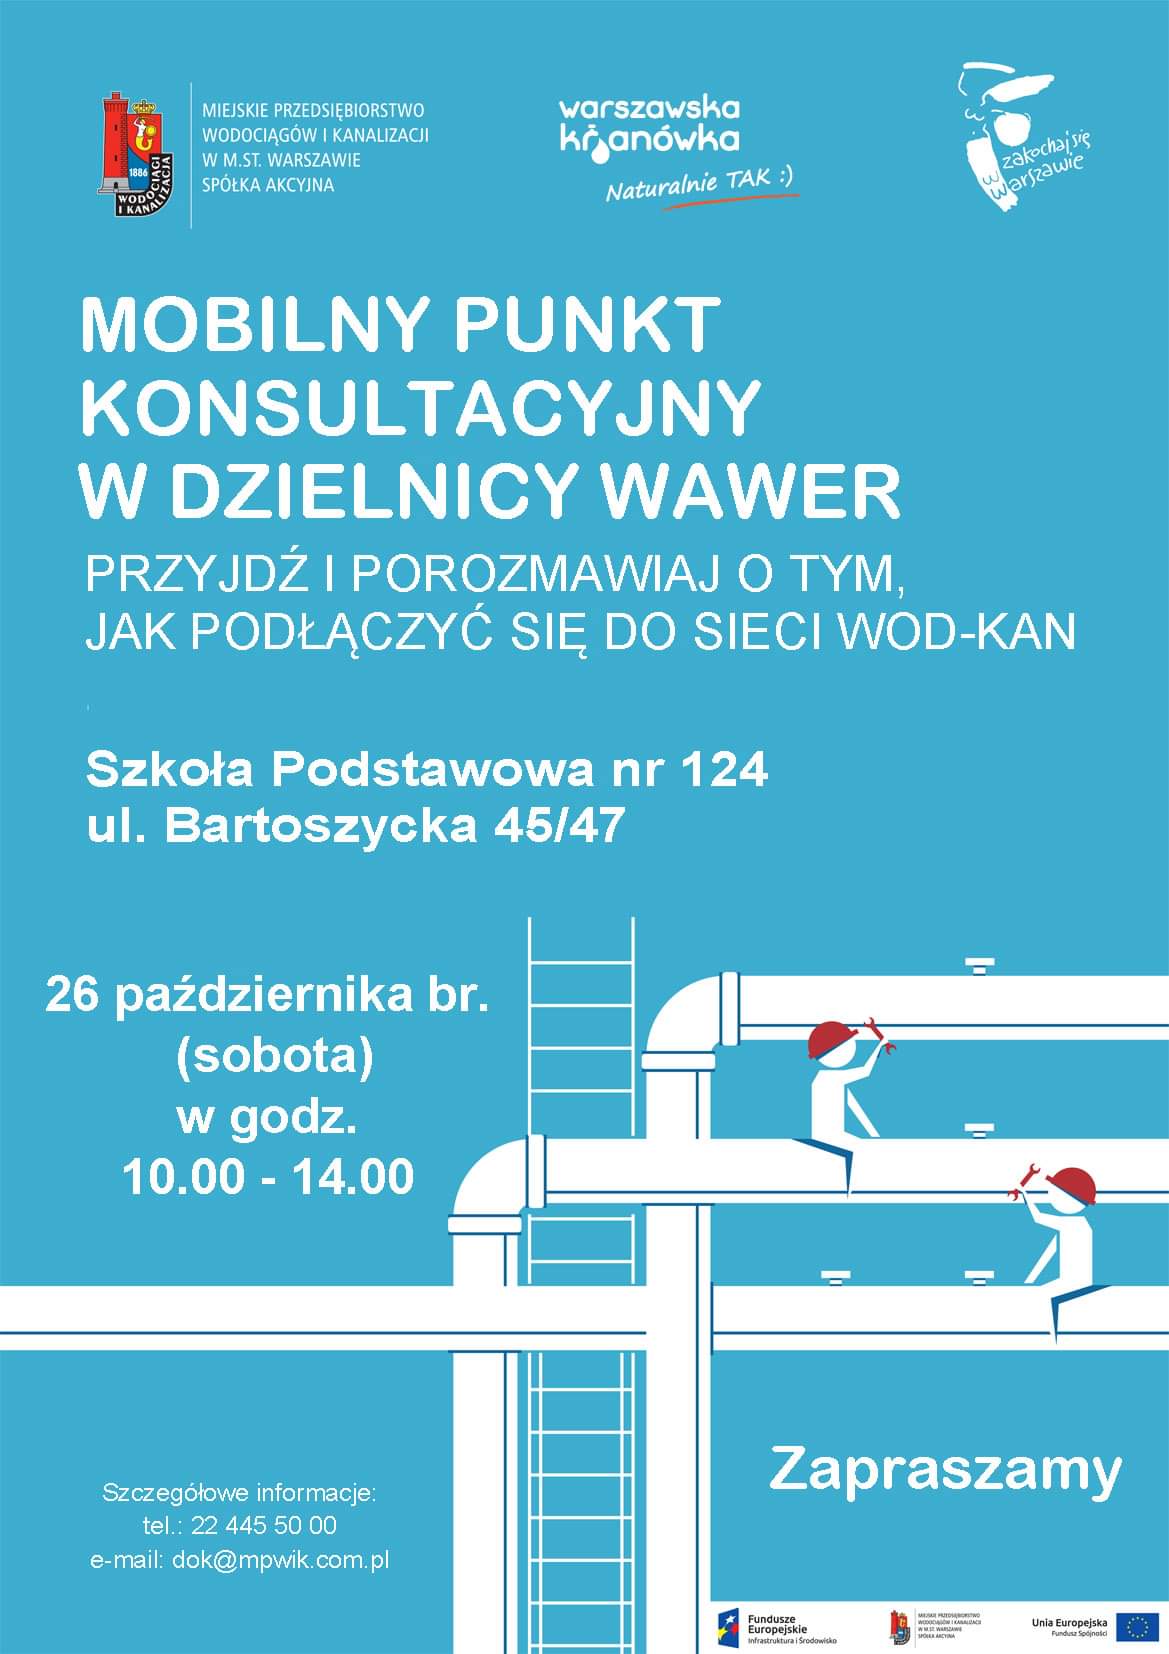 Mobilny punkt konsultacyjny dotyczący podłączenia posesji do sieci wodociągowej i kanalizacyjnej Miejskiego Przedsiębiorstwa Wodociągów i Kanalizacji w Warszawie